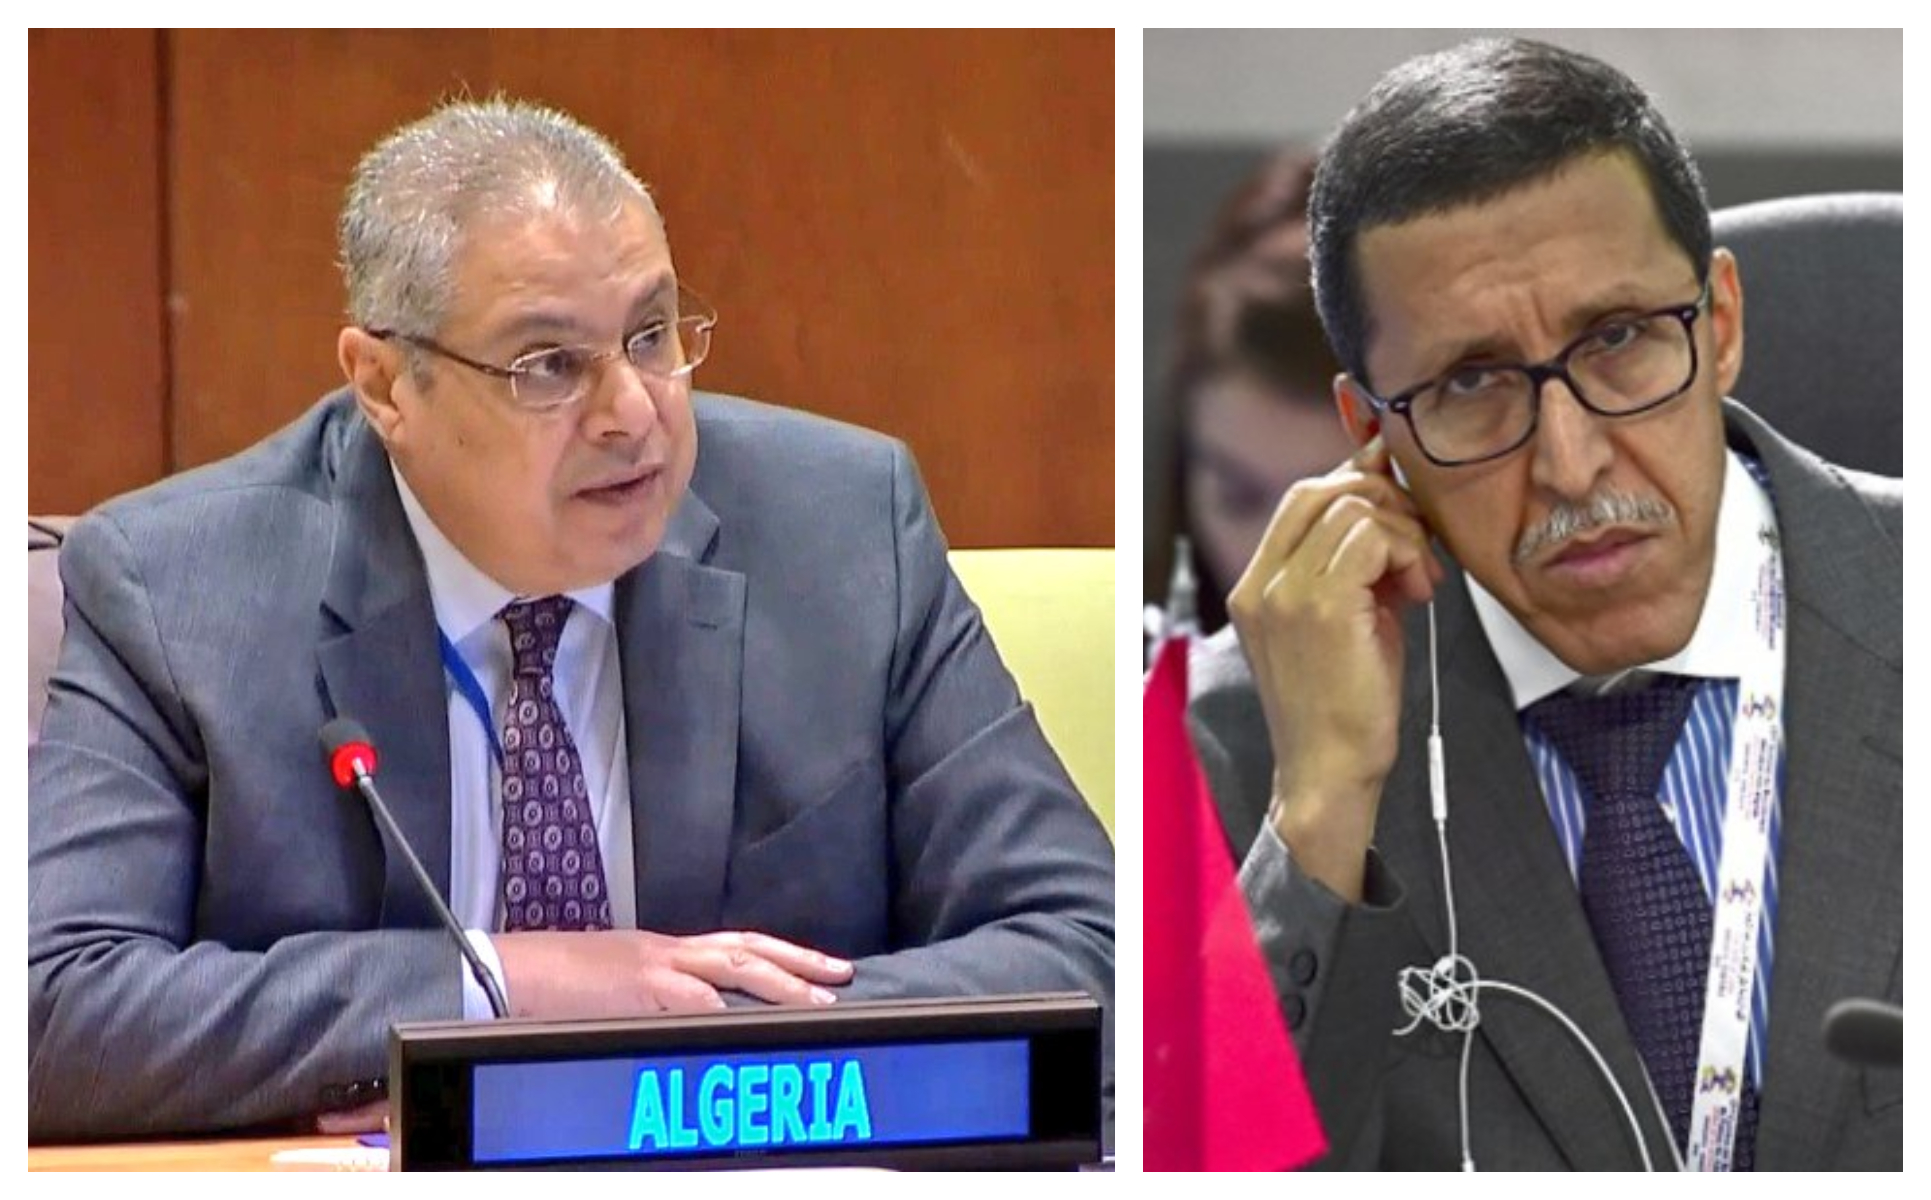 السفير الجزائري يواجه نظيره المغربي في الأمم المتحدة ويفضح أكاذيبه